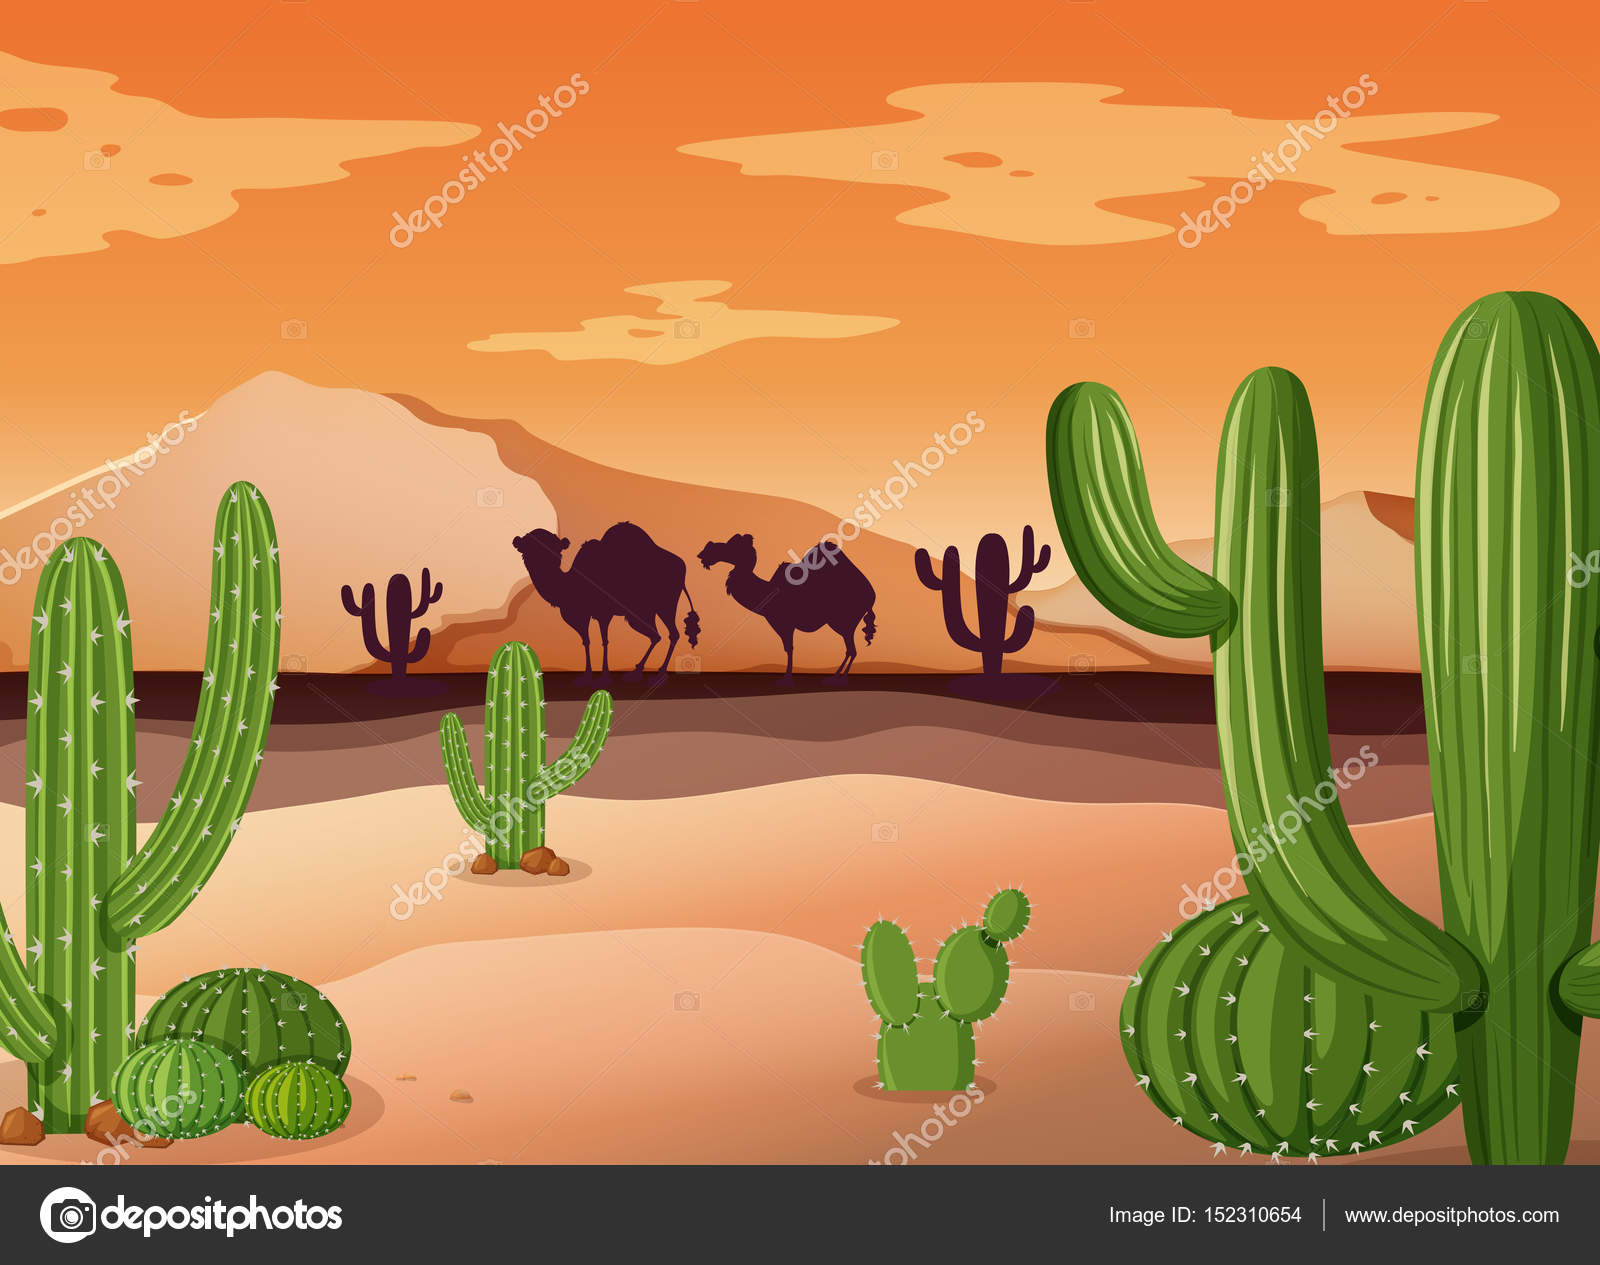 Vetores de Planta De Cactos Do Deserto Ilustração De Vetor De Desenho  Animado Isolado Em Branco e mais imagens de Cacto - iStock